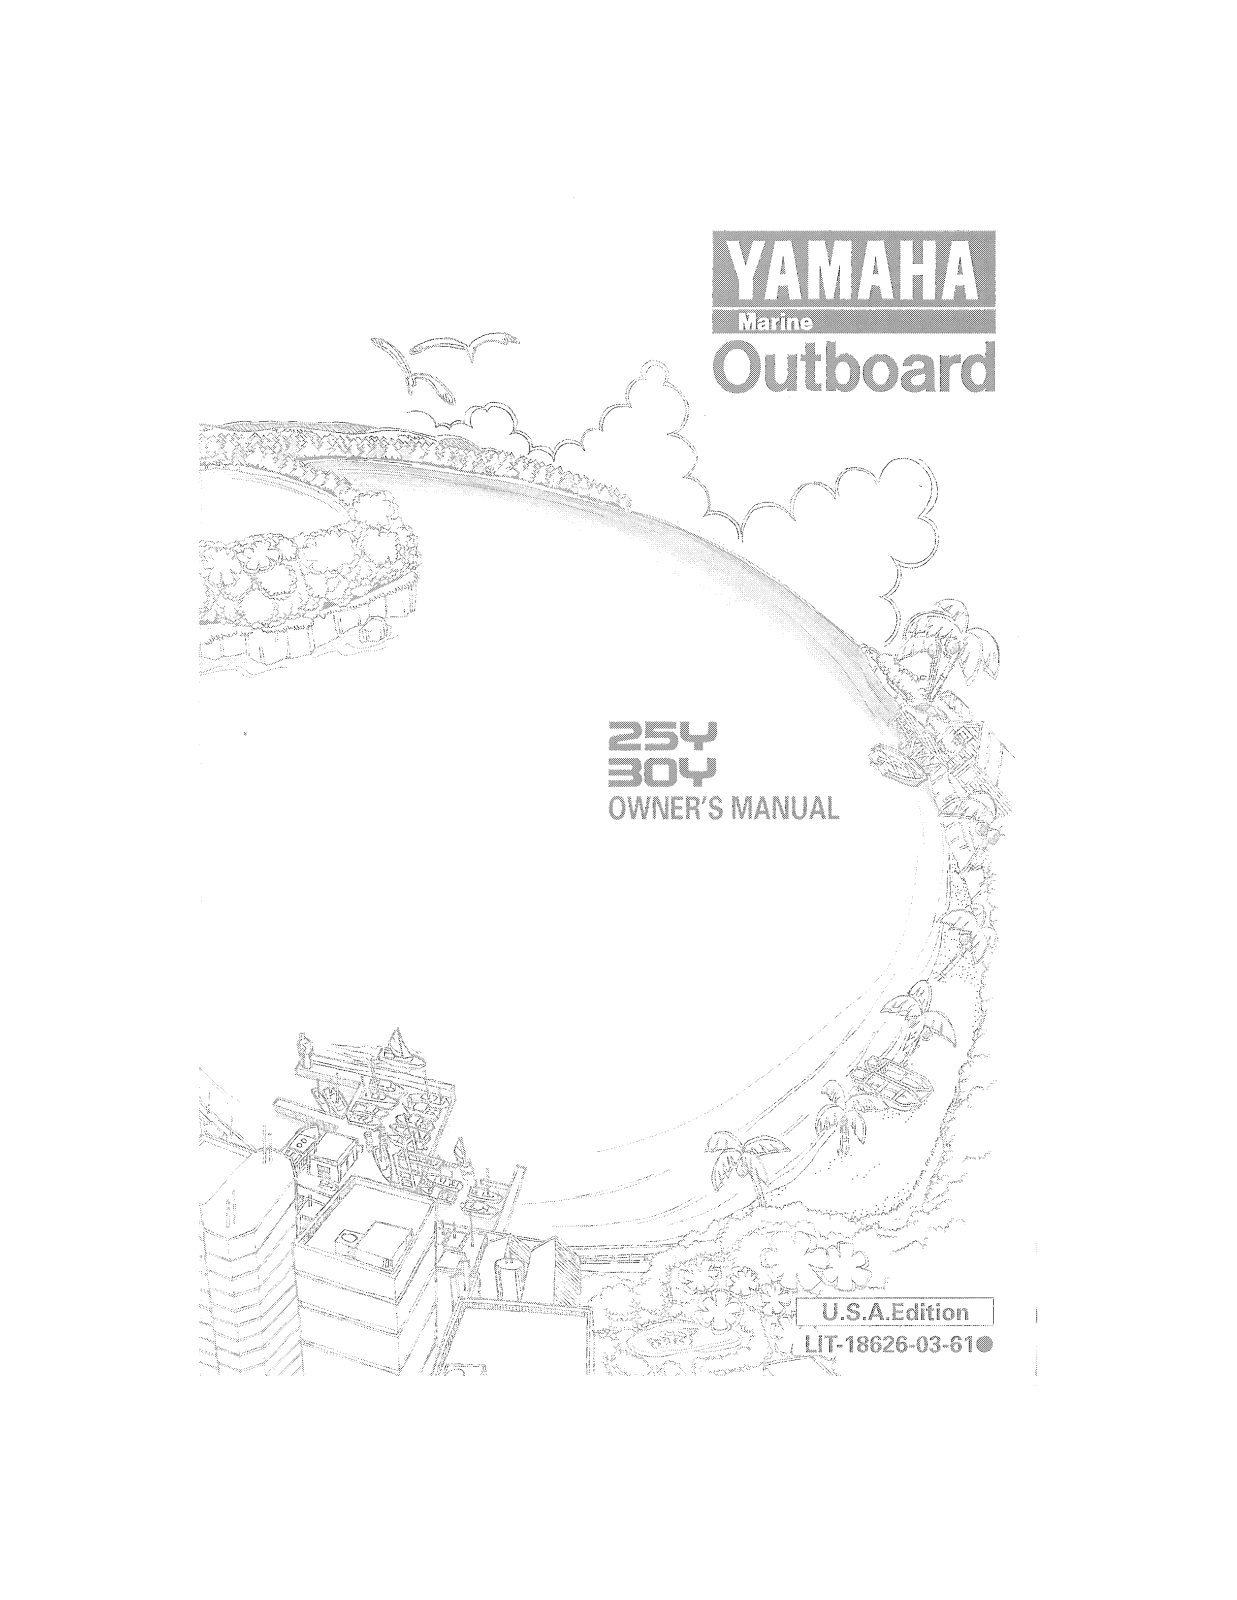 Yamaha 25Y, 30Y User Manual